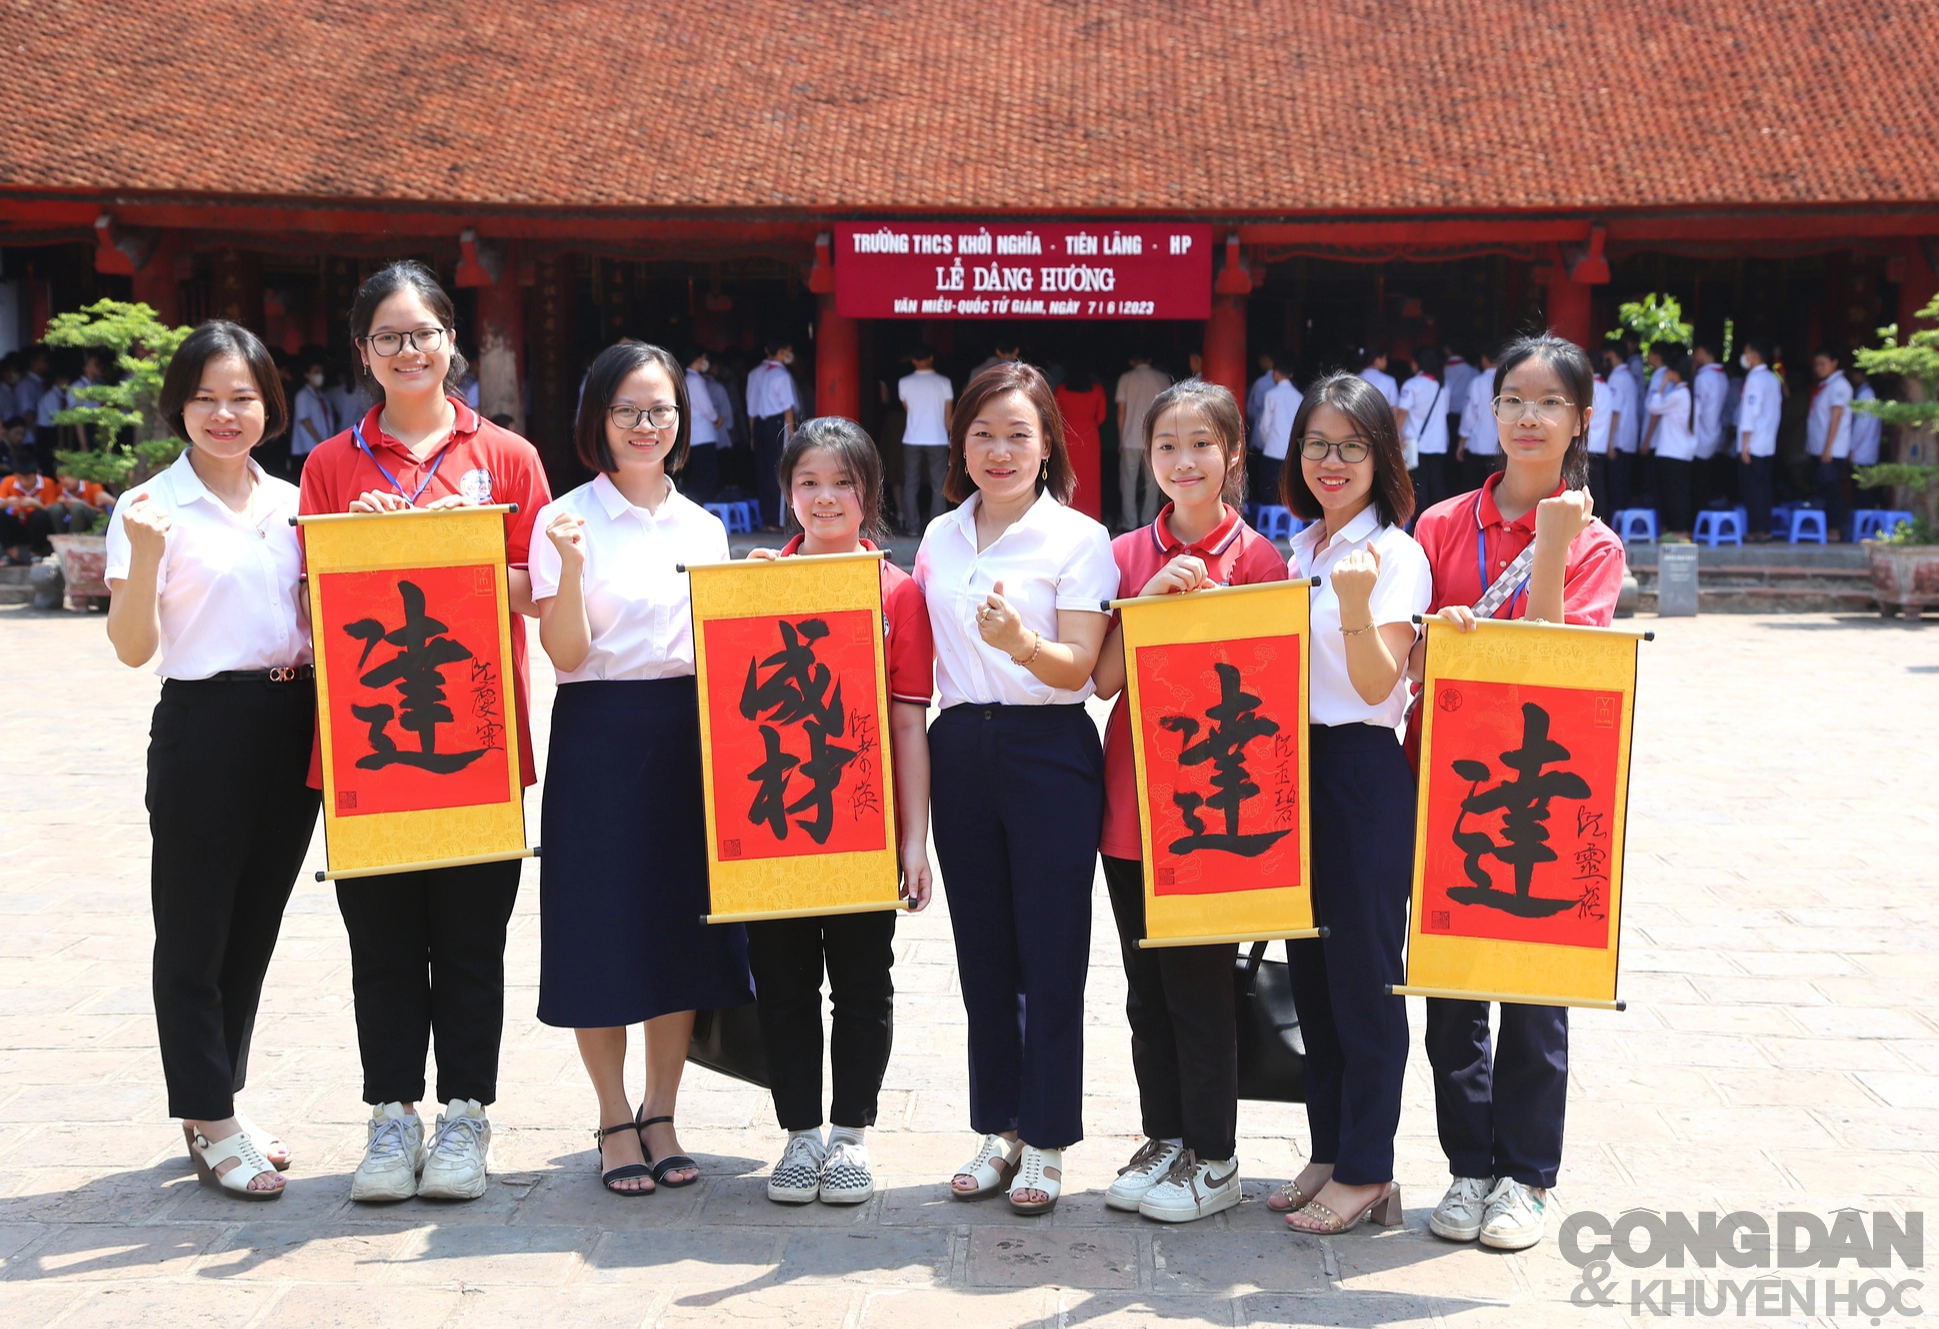 Kỳ thi tuyển sinh vào lớp 10 tại Hà Nội sẽ diễn ra trong 2 ngày 10-11/6. Buổi sáng 10/6 thí sinh thi Ngữ văn, chiều cùng ngày thi ngoại ngữ; sáng 11/6 thi môn Toán. Cuộc đua năm nay chỉ có 55,7% học sinh có suất học vào trường trung học phổ thông công lập (khoảng 72.000 học sinh).